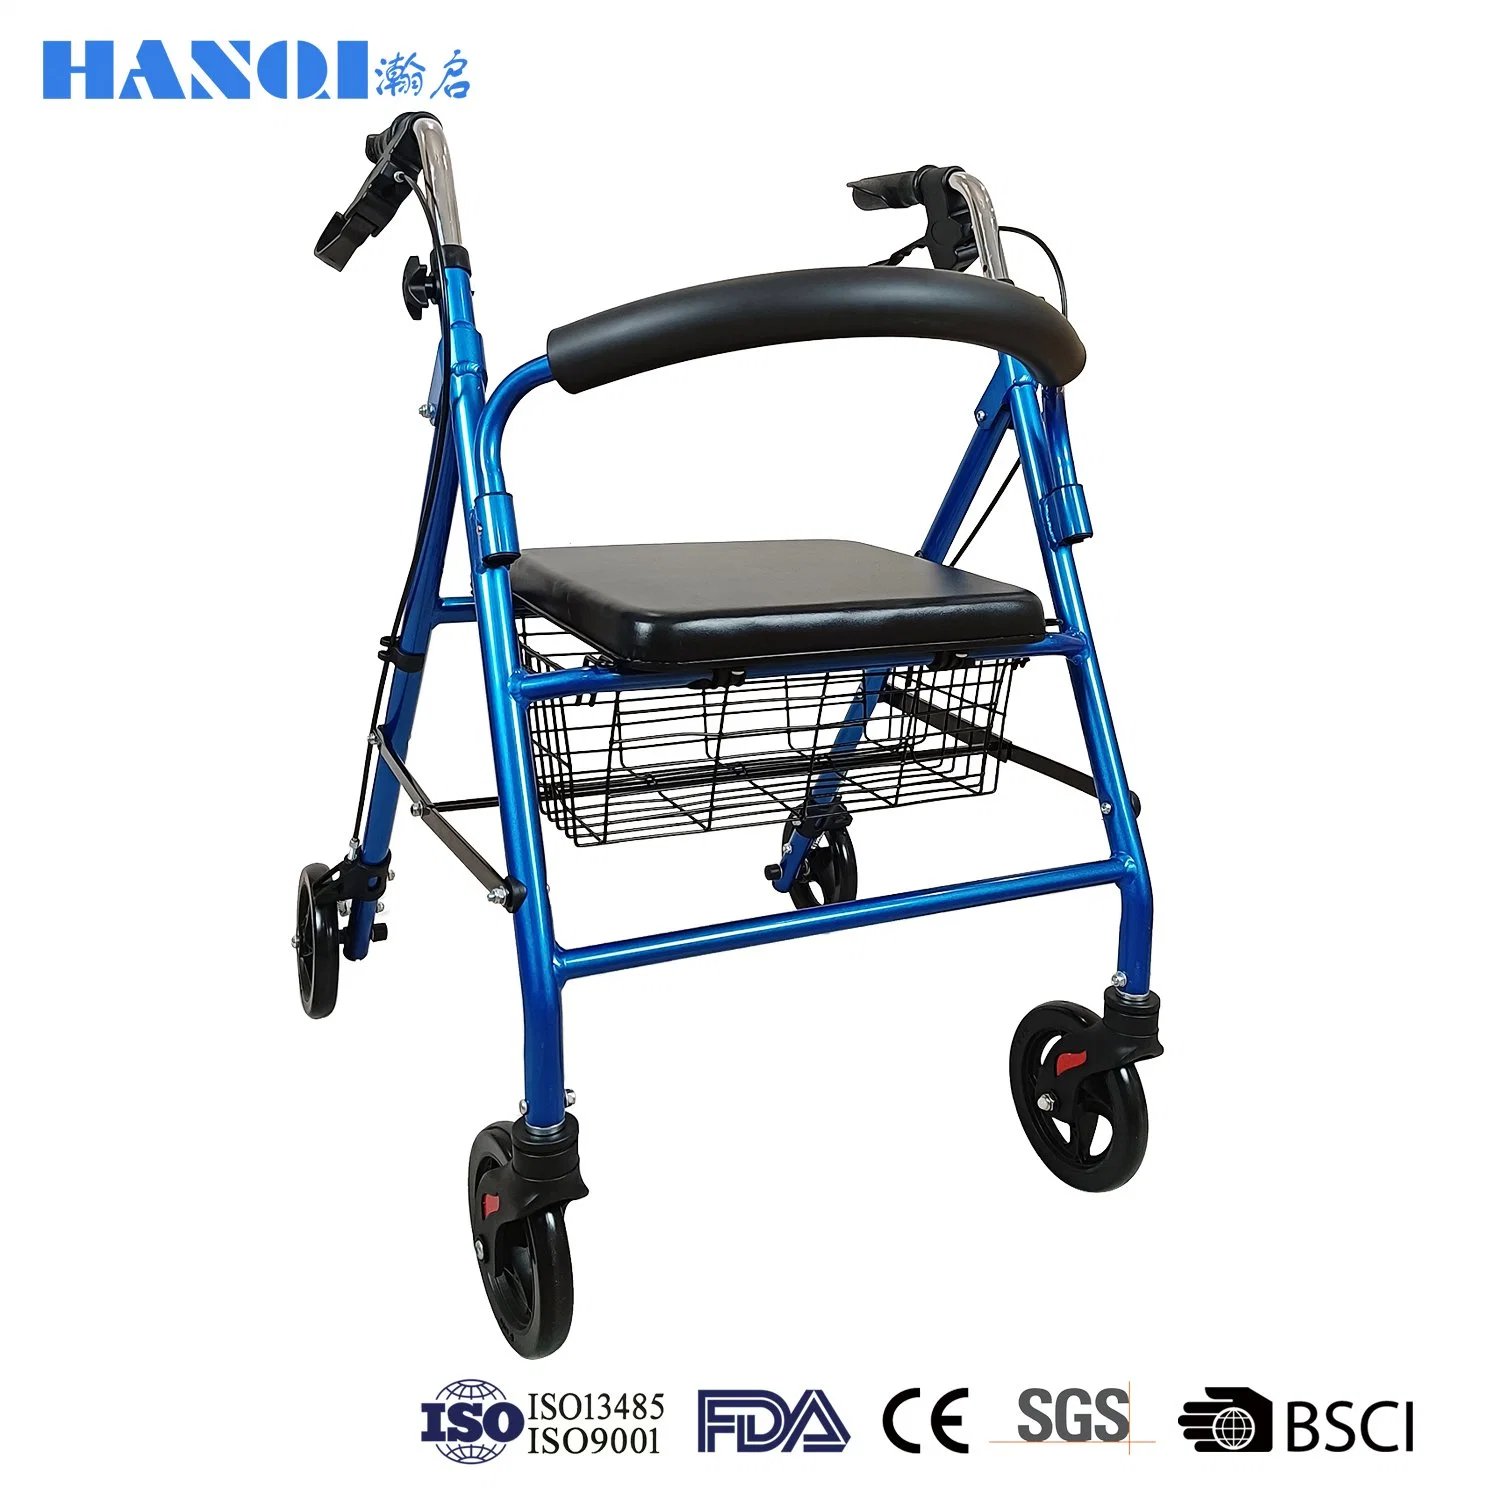 Andador plegable de alta calidad Hanqi con freno para personas mayores Persona